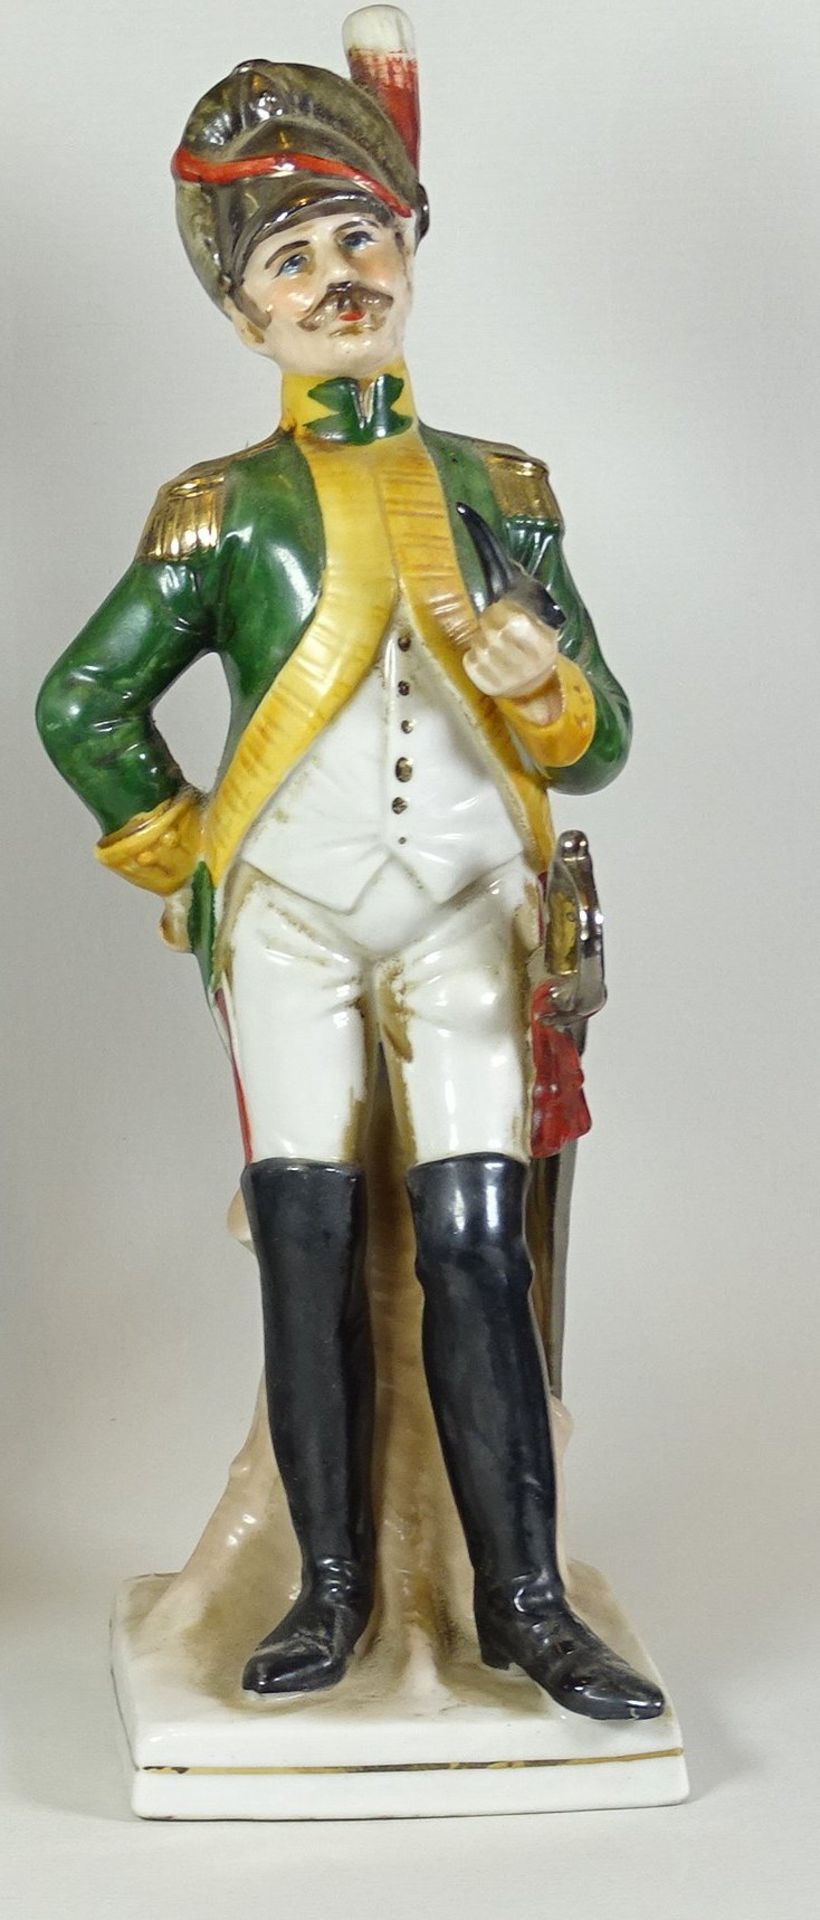 Offizier Figur mit Pfeife,ungemarkt, H. 25cm,Alters- und Gebrauchsspuren